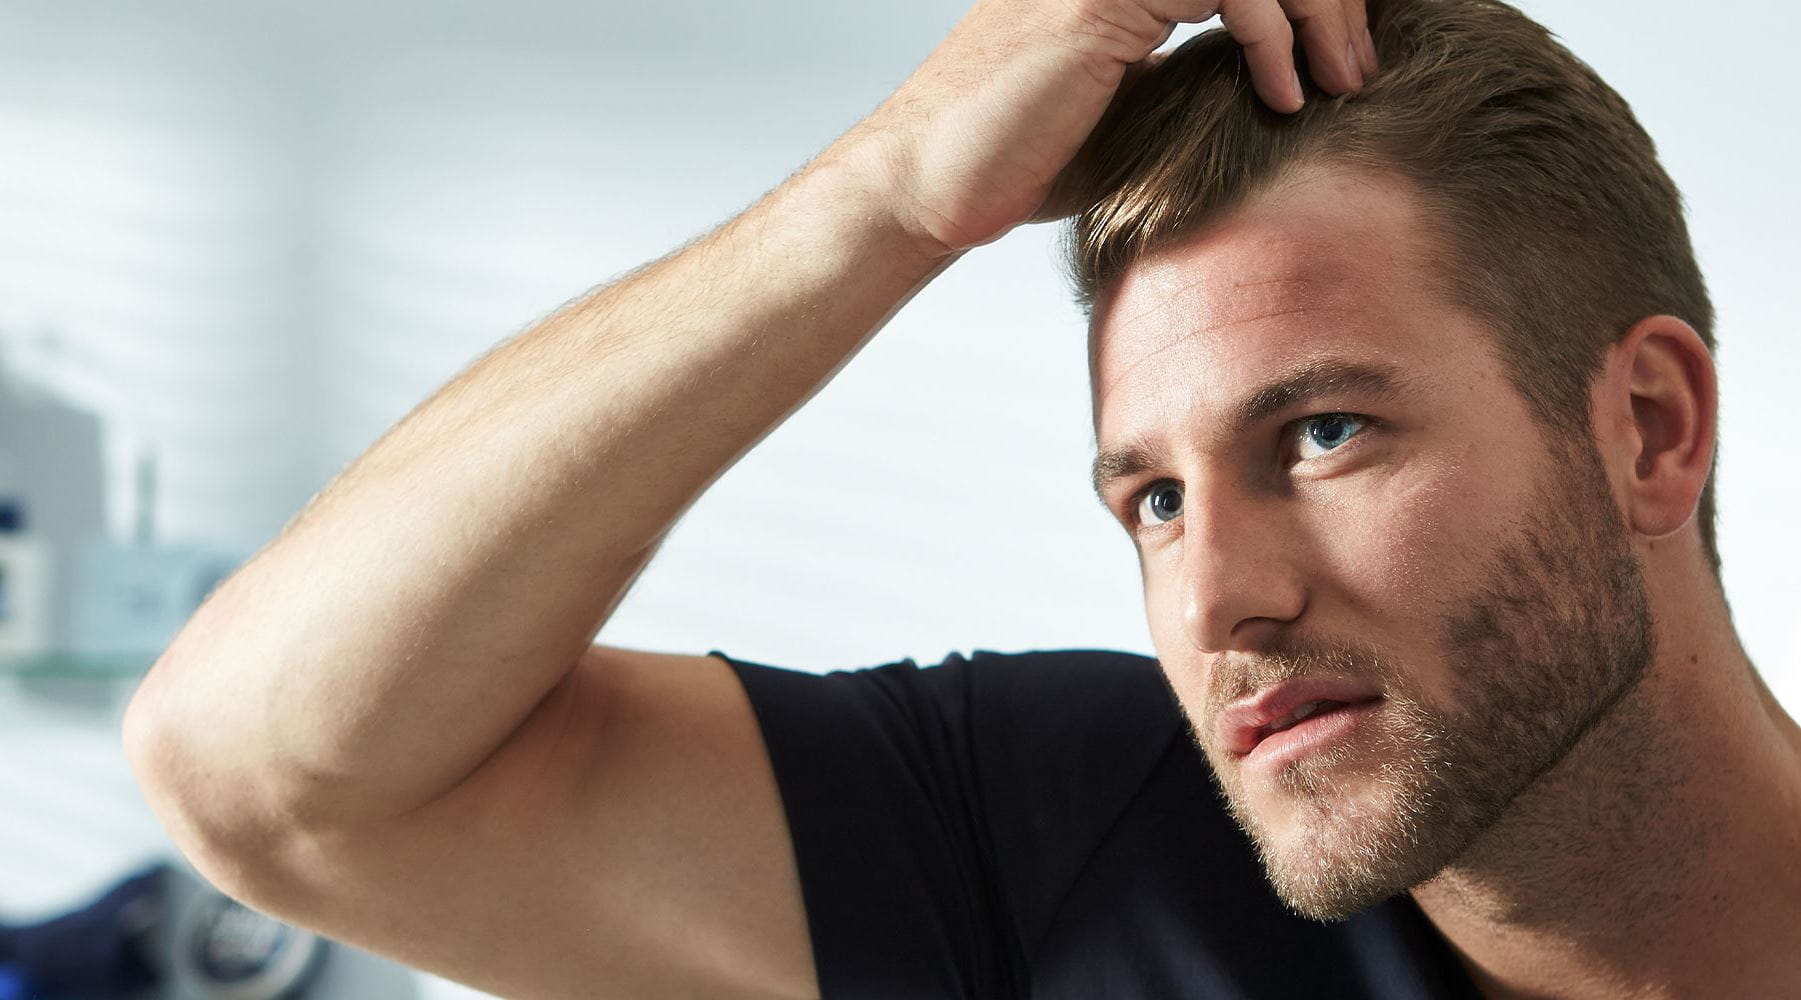 Izpadanje las pri moških: kaj pomaga?